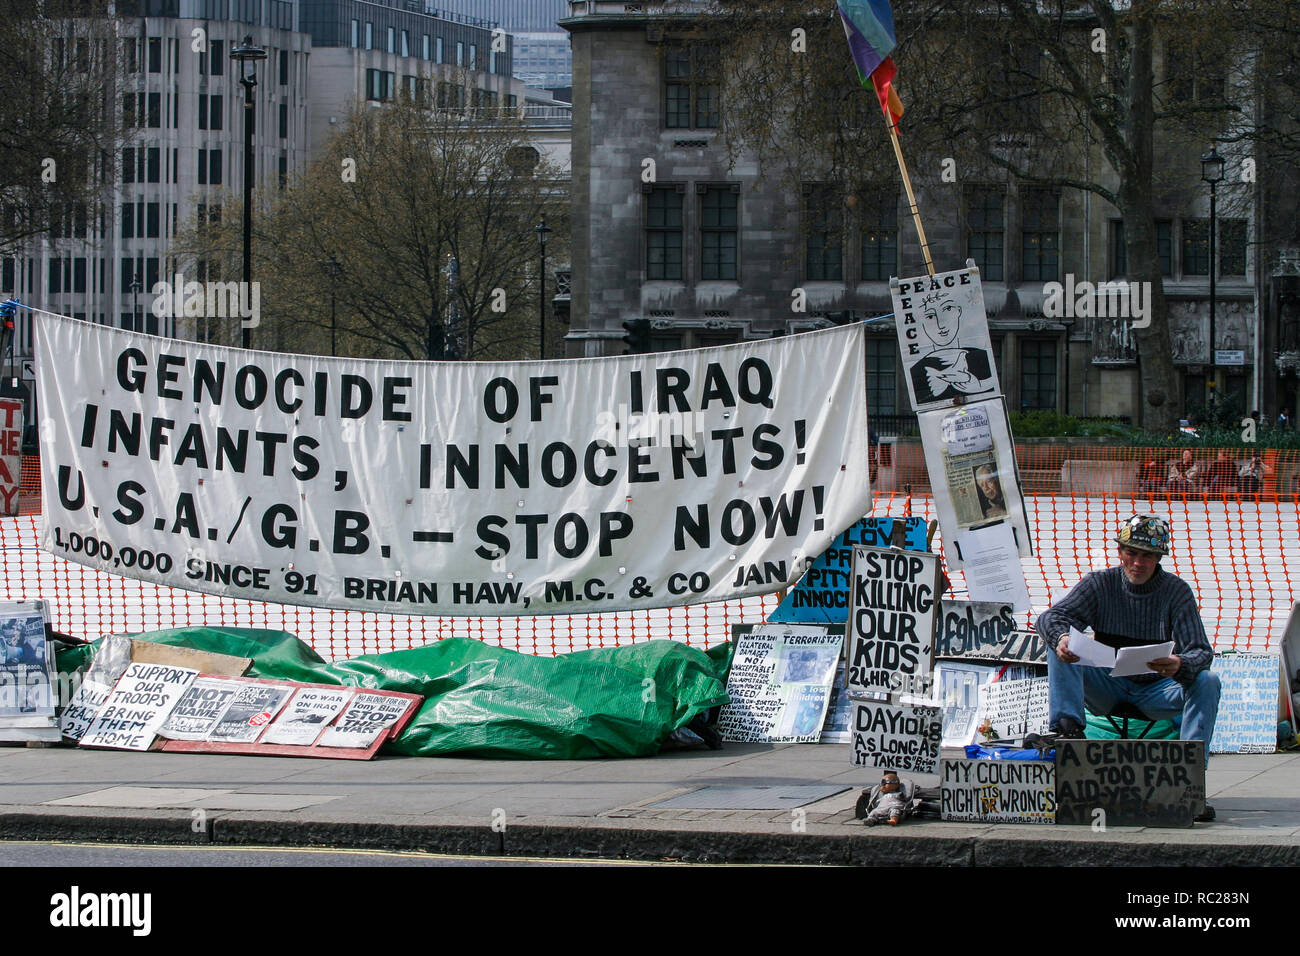 Gréviste de la faim pour protester contre la guerre du Golfe, Londres, Grande-Bretagne, Royaume-Uni Banque D'Images